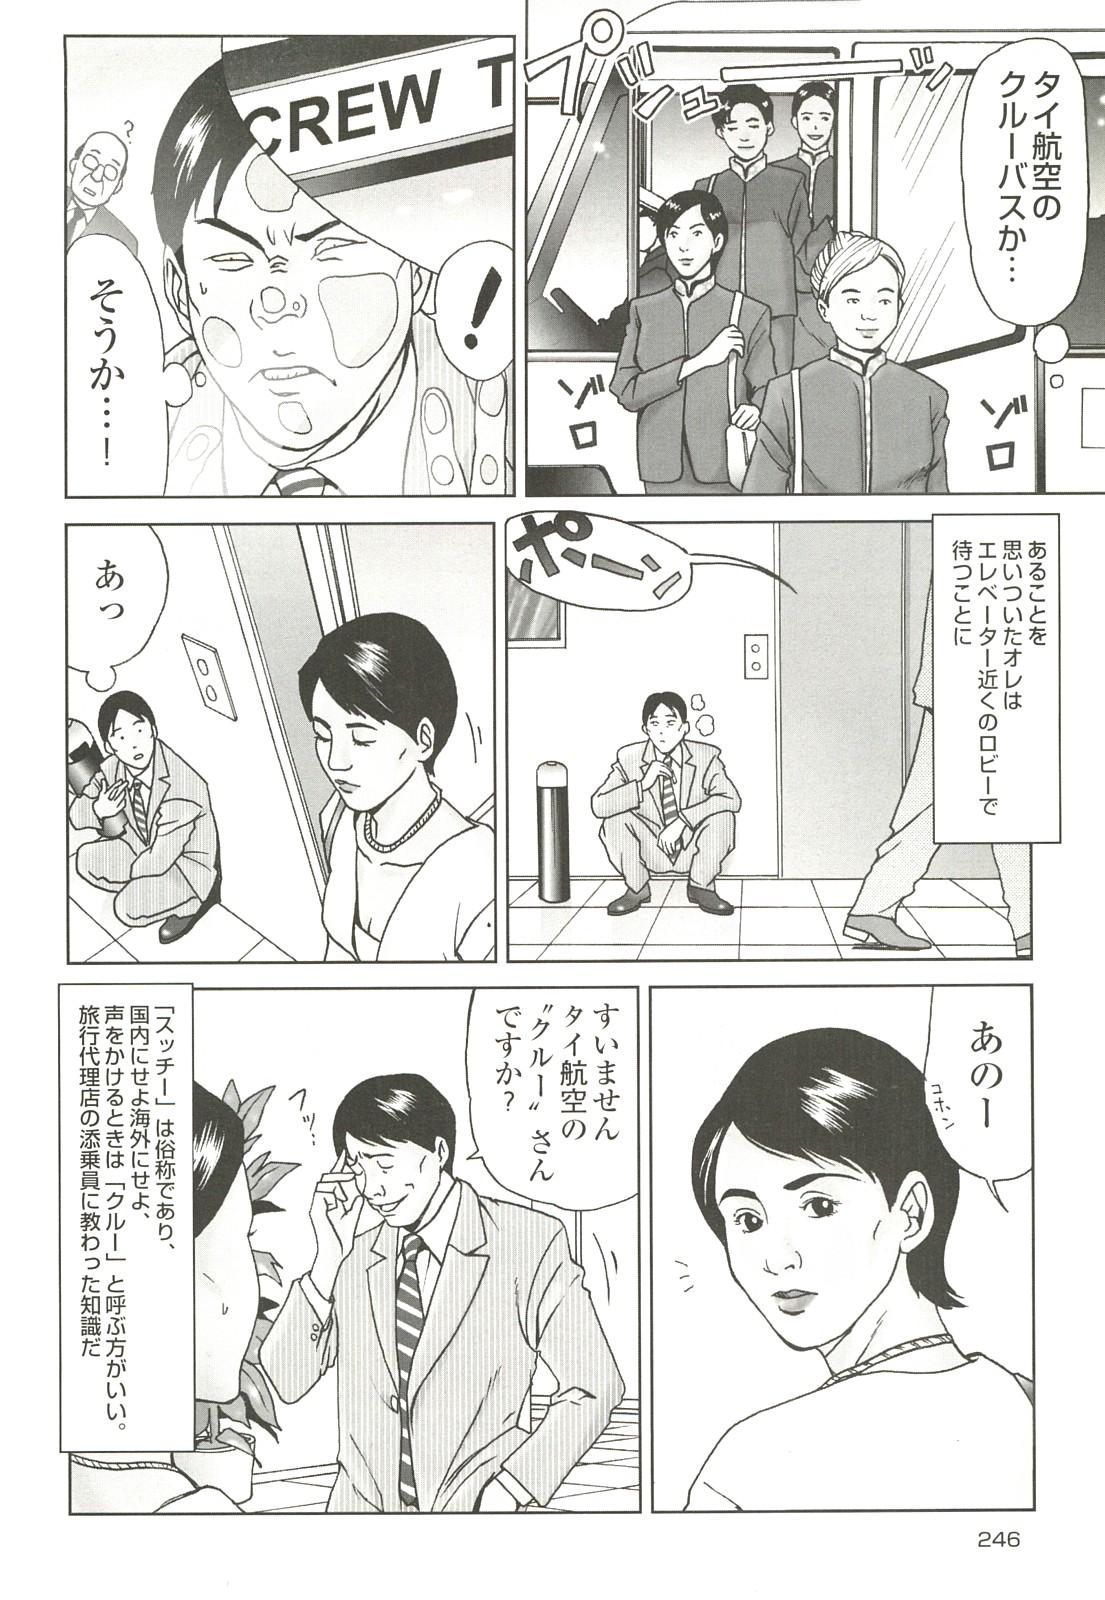 コミック裏モノJAPAN Vol.18 今井のりたつスペシャル号 245